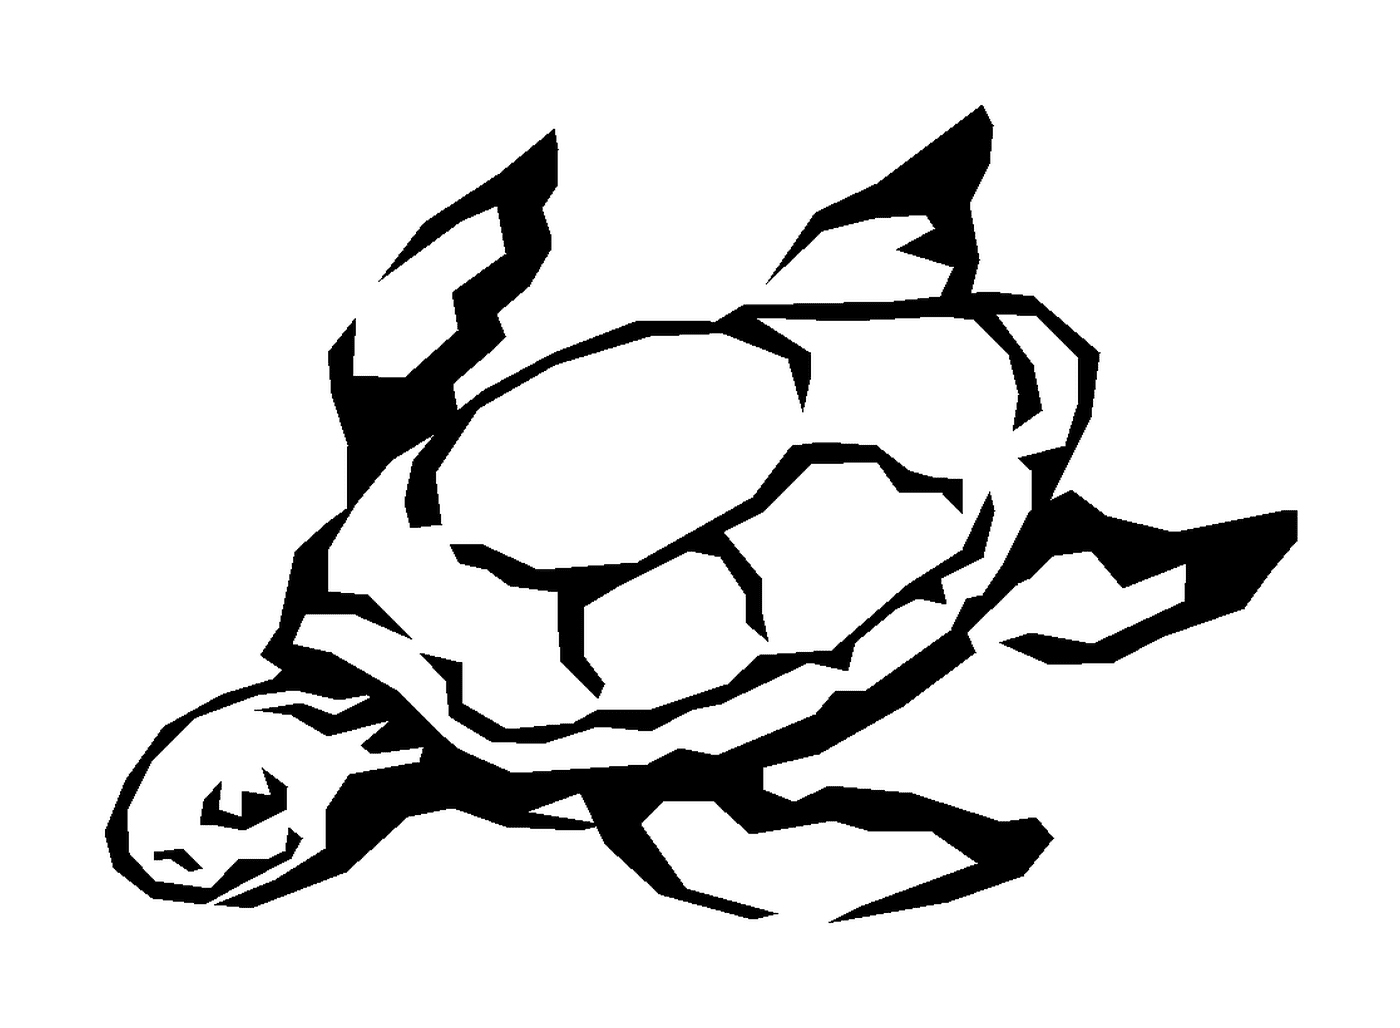  Marine turtle 2 